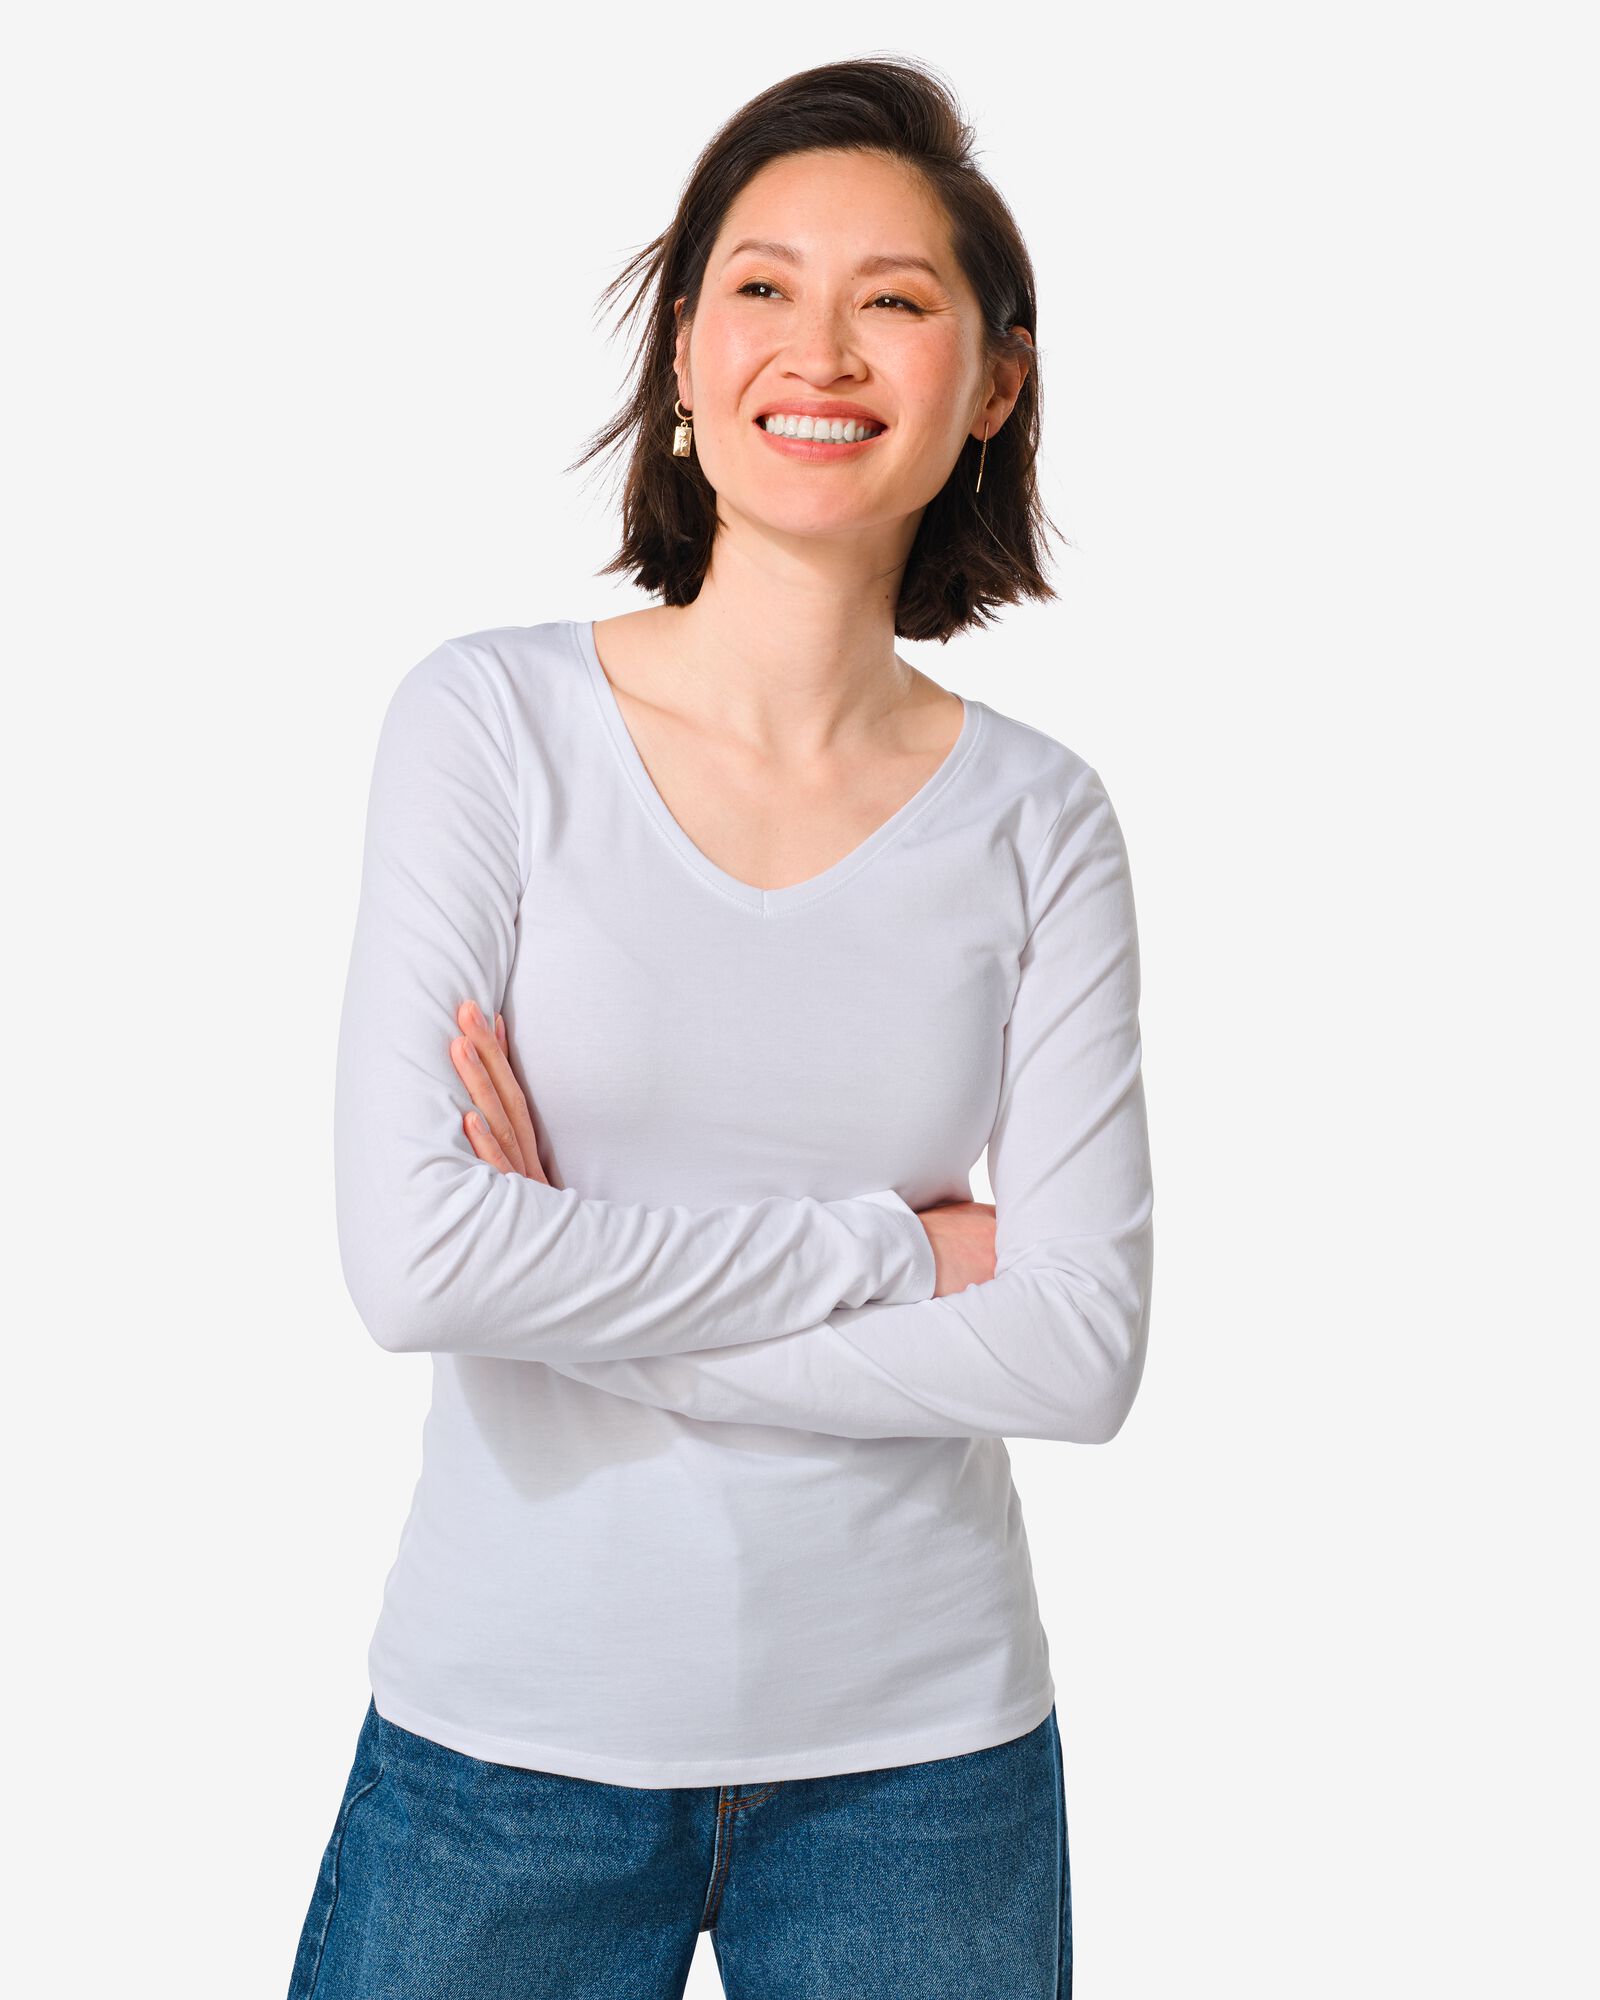 Damen-Shirt weiß XL - 36381774 - HEMA